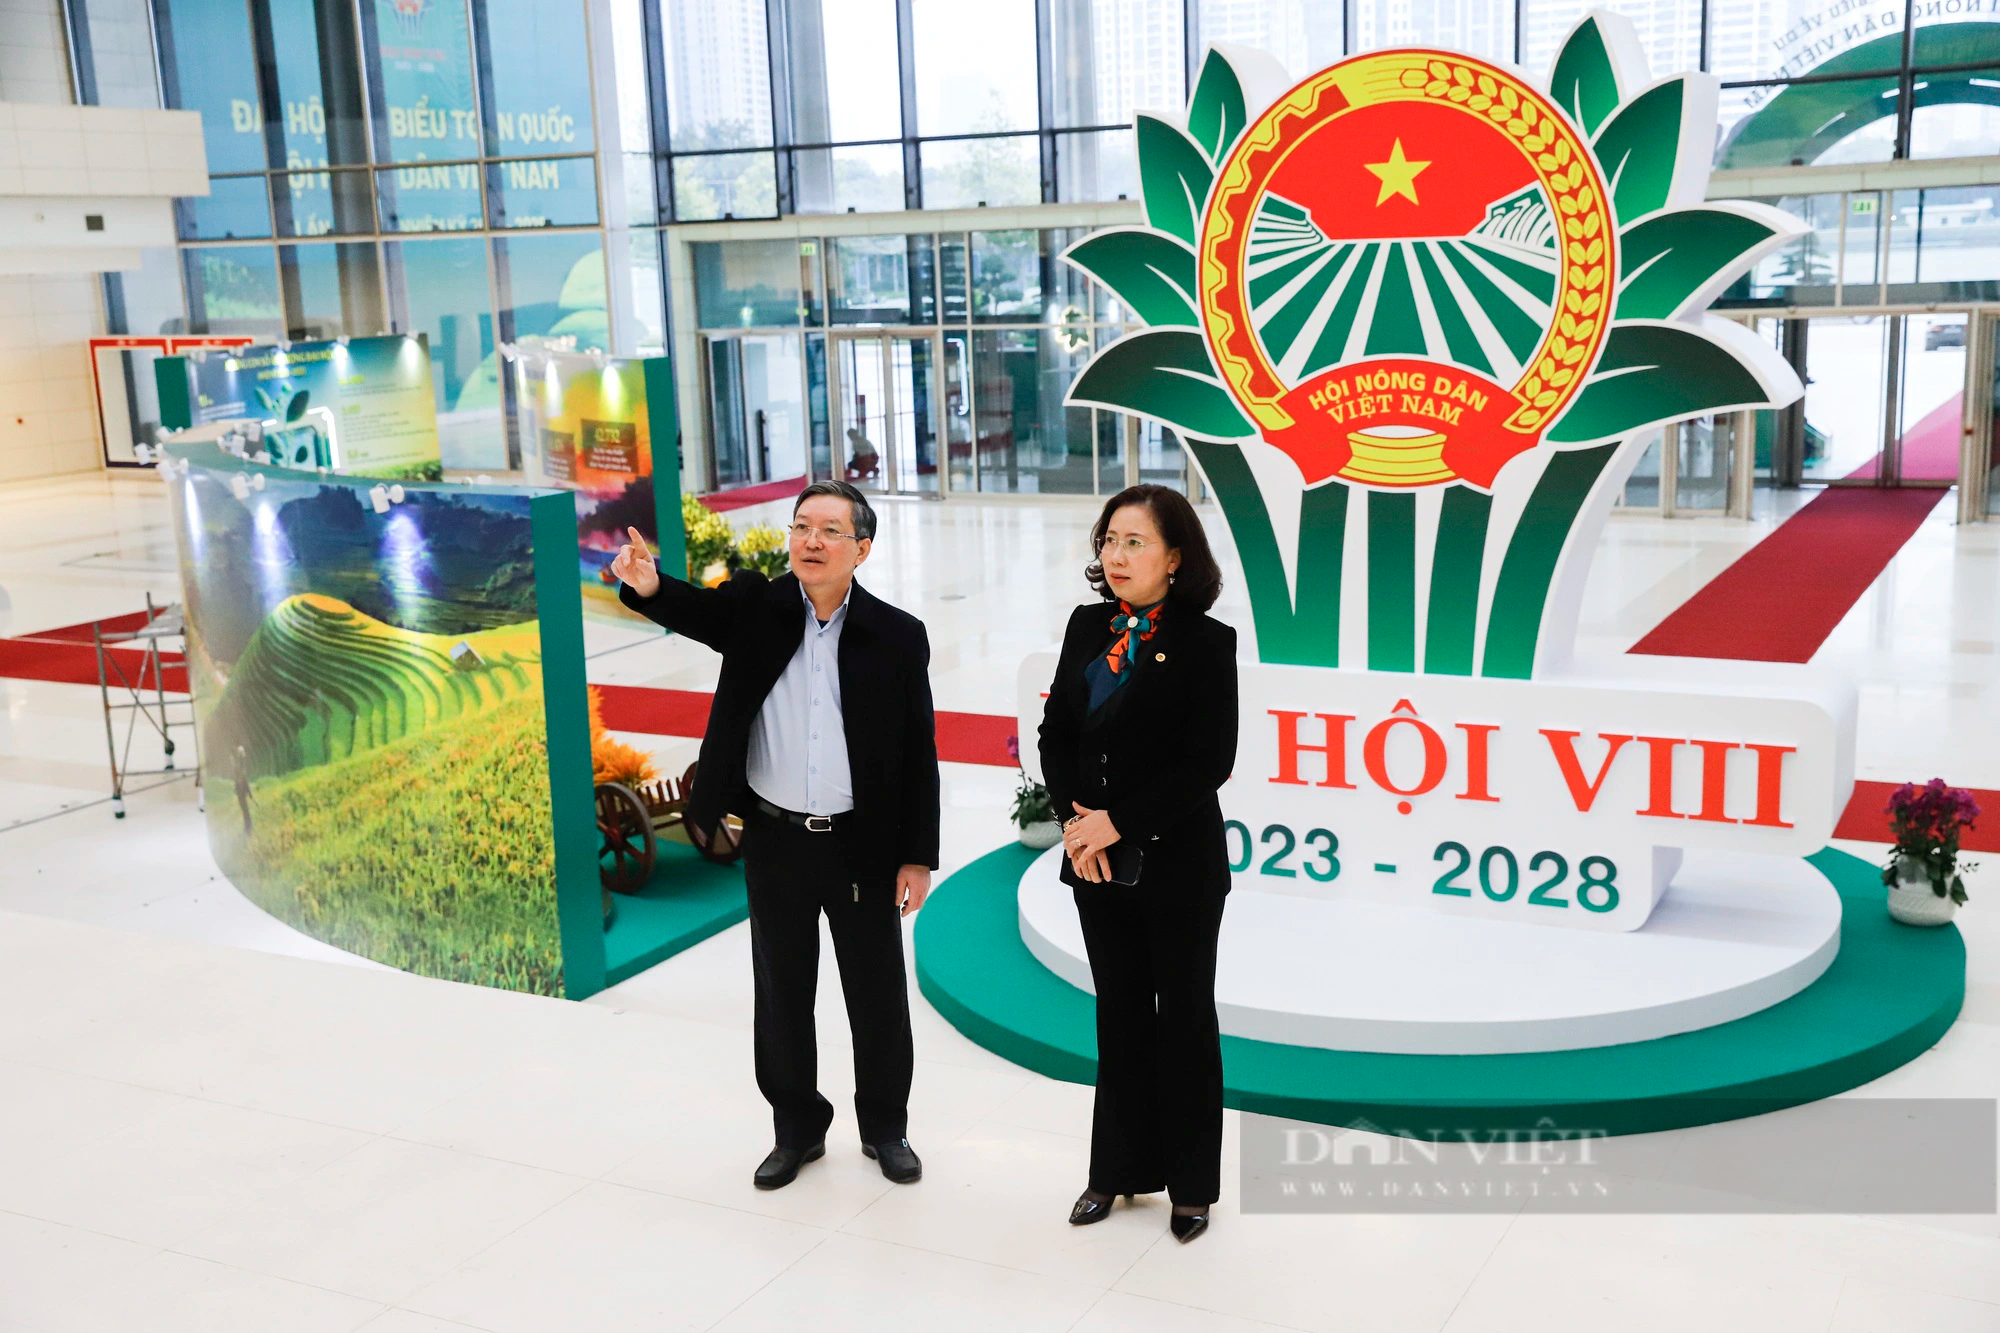 Chủ tịch Hội NDVN Lương Quốc Đoàn kiểm tra công tác chuẩn bị Đại hội VIII Hội nông dân Việt Nam - Ảnh 4.